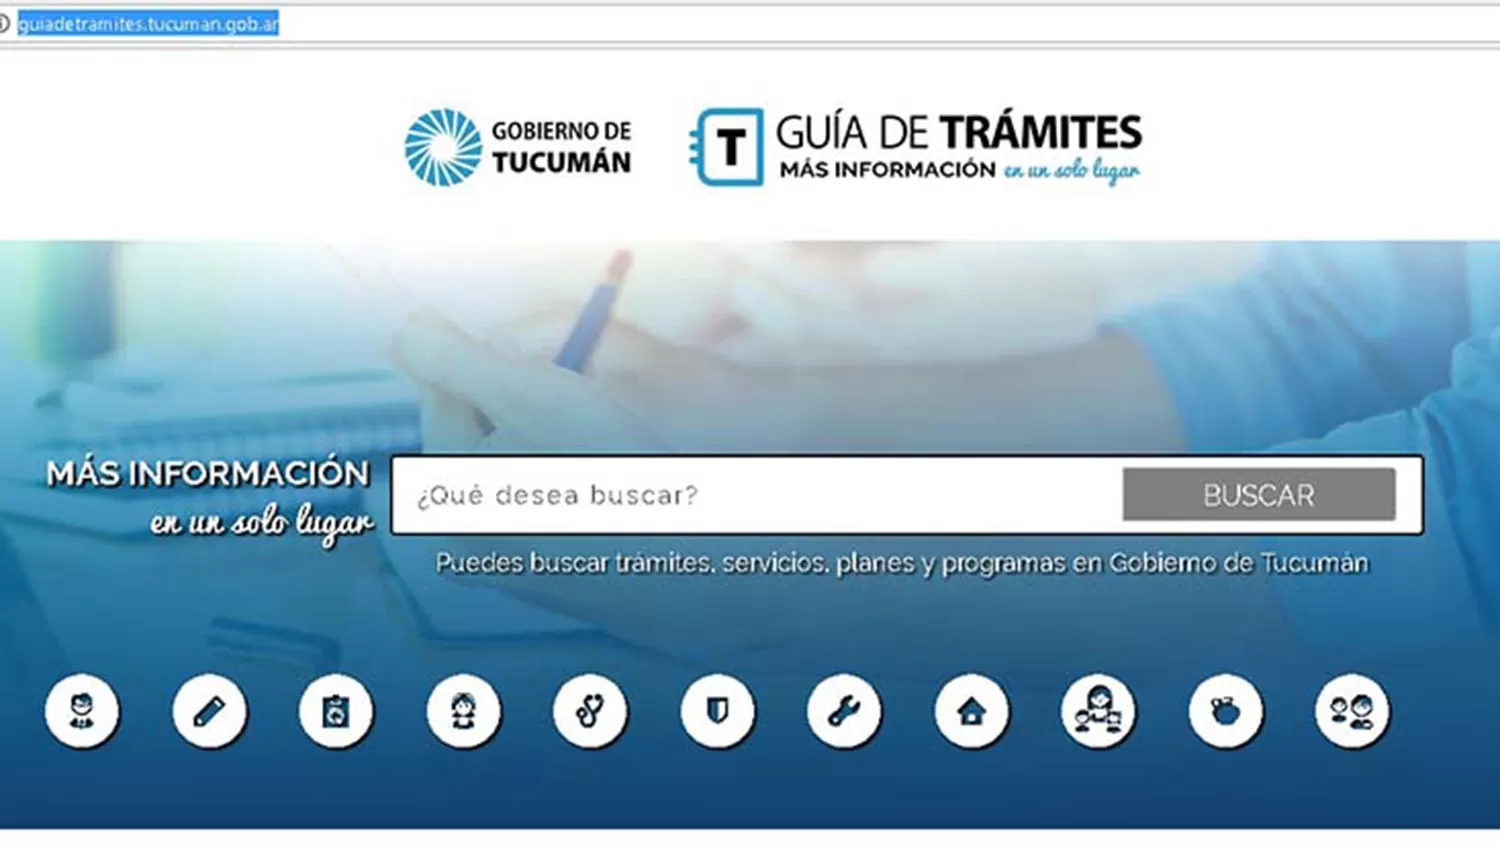 El Gobierno tucumano lanzó una guía de trámites a través de una página web